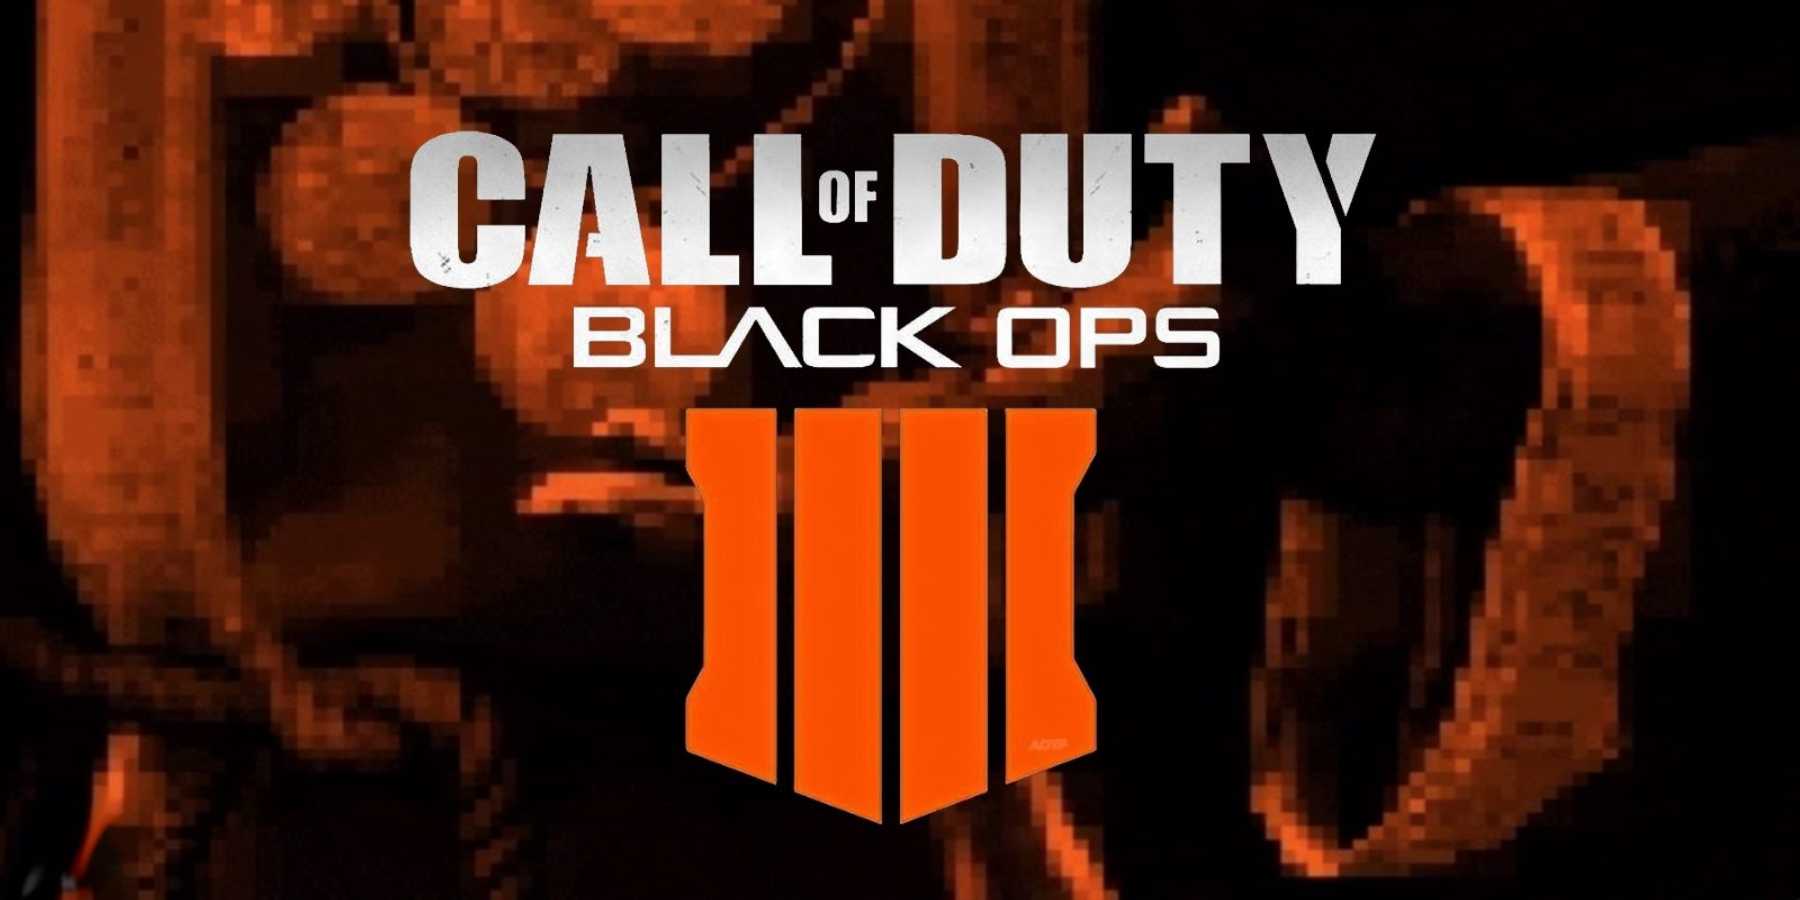 Uno de los juegos más esperados cada año es el nuevo Call of Duty. Este año le toca a Black Ops 4, entrega desarrollada por Treyarch.